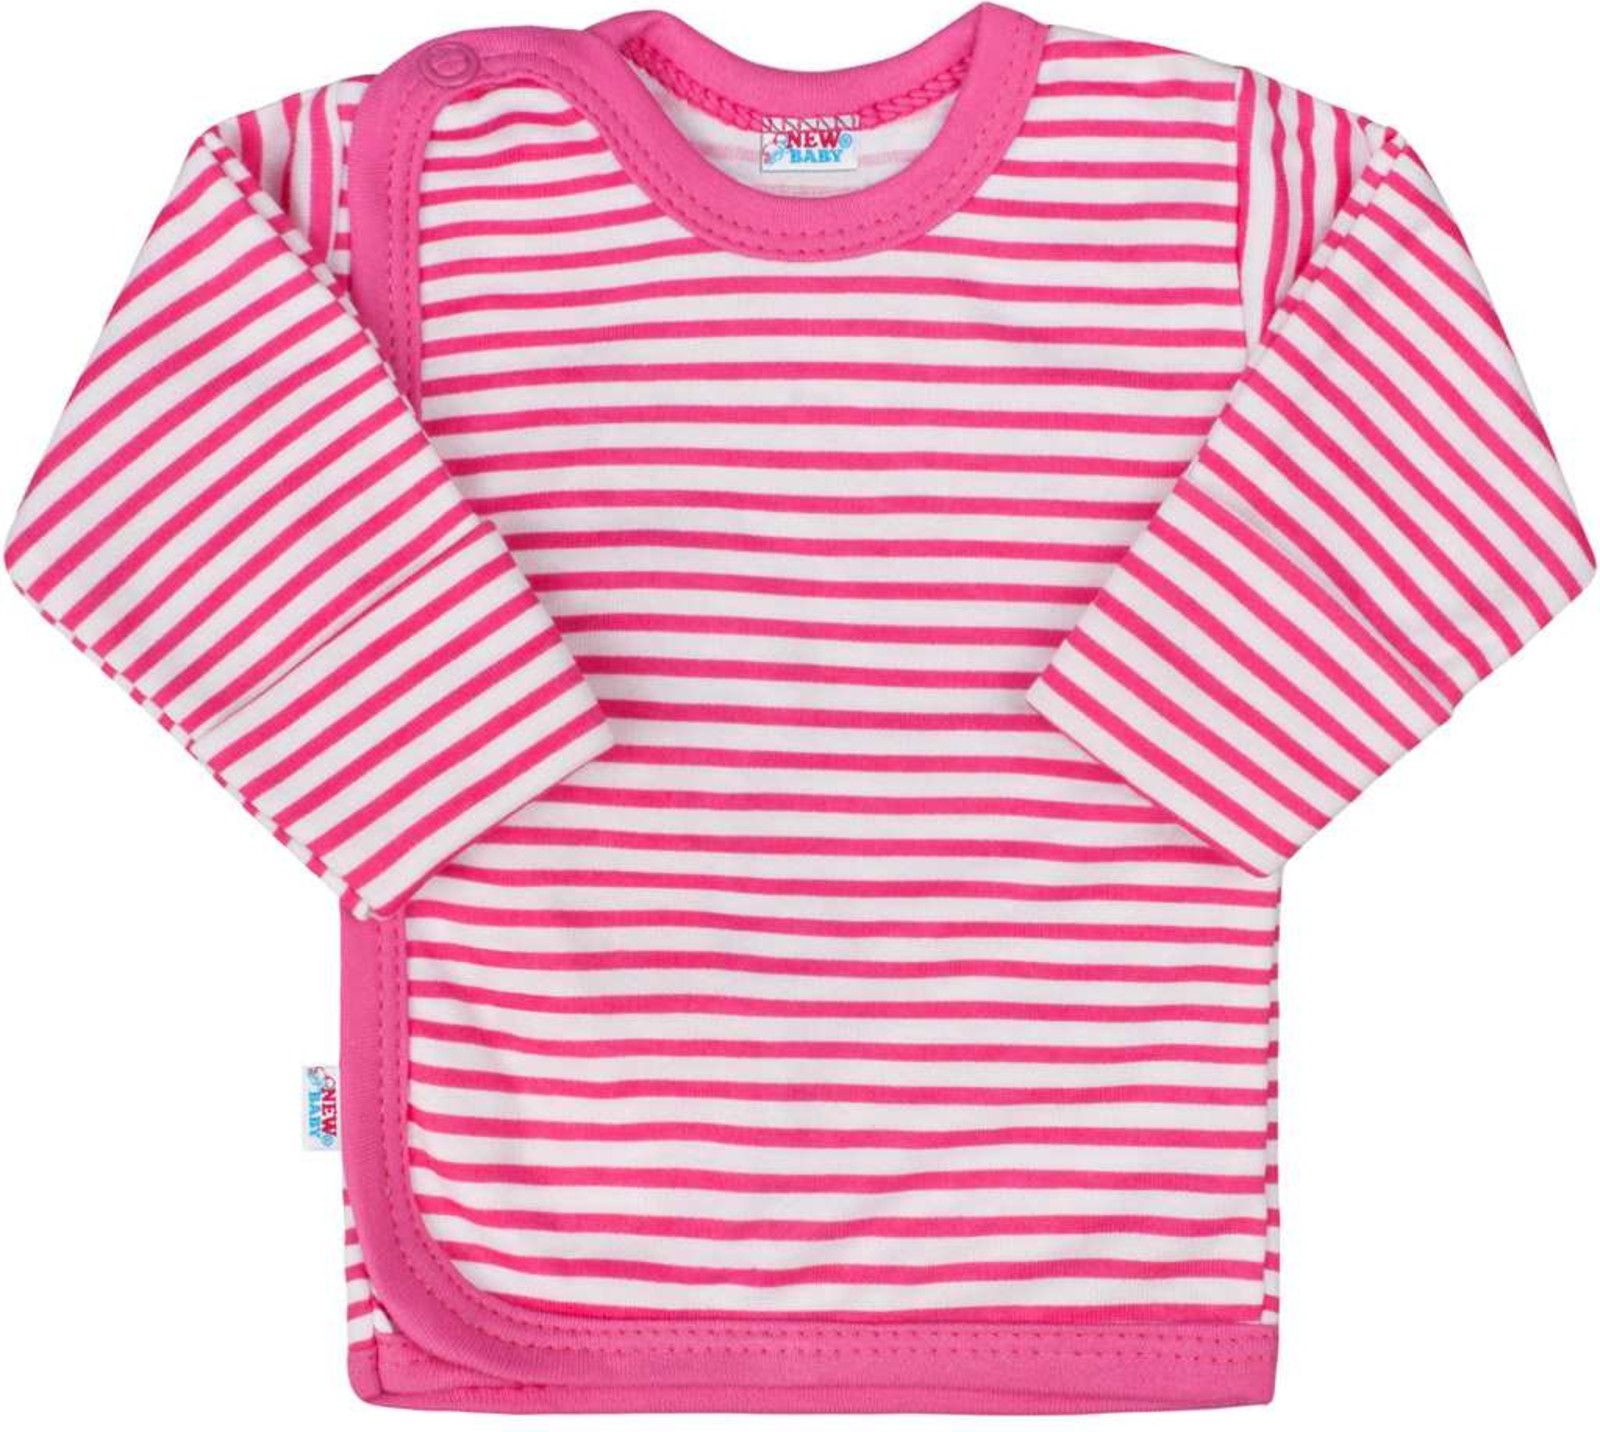 Kojenecká košilka New Baby Classic II s růžovými pruhy - Kojenecká košilka New Baby Classic II s růžovými pruhy - obrázek 1